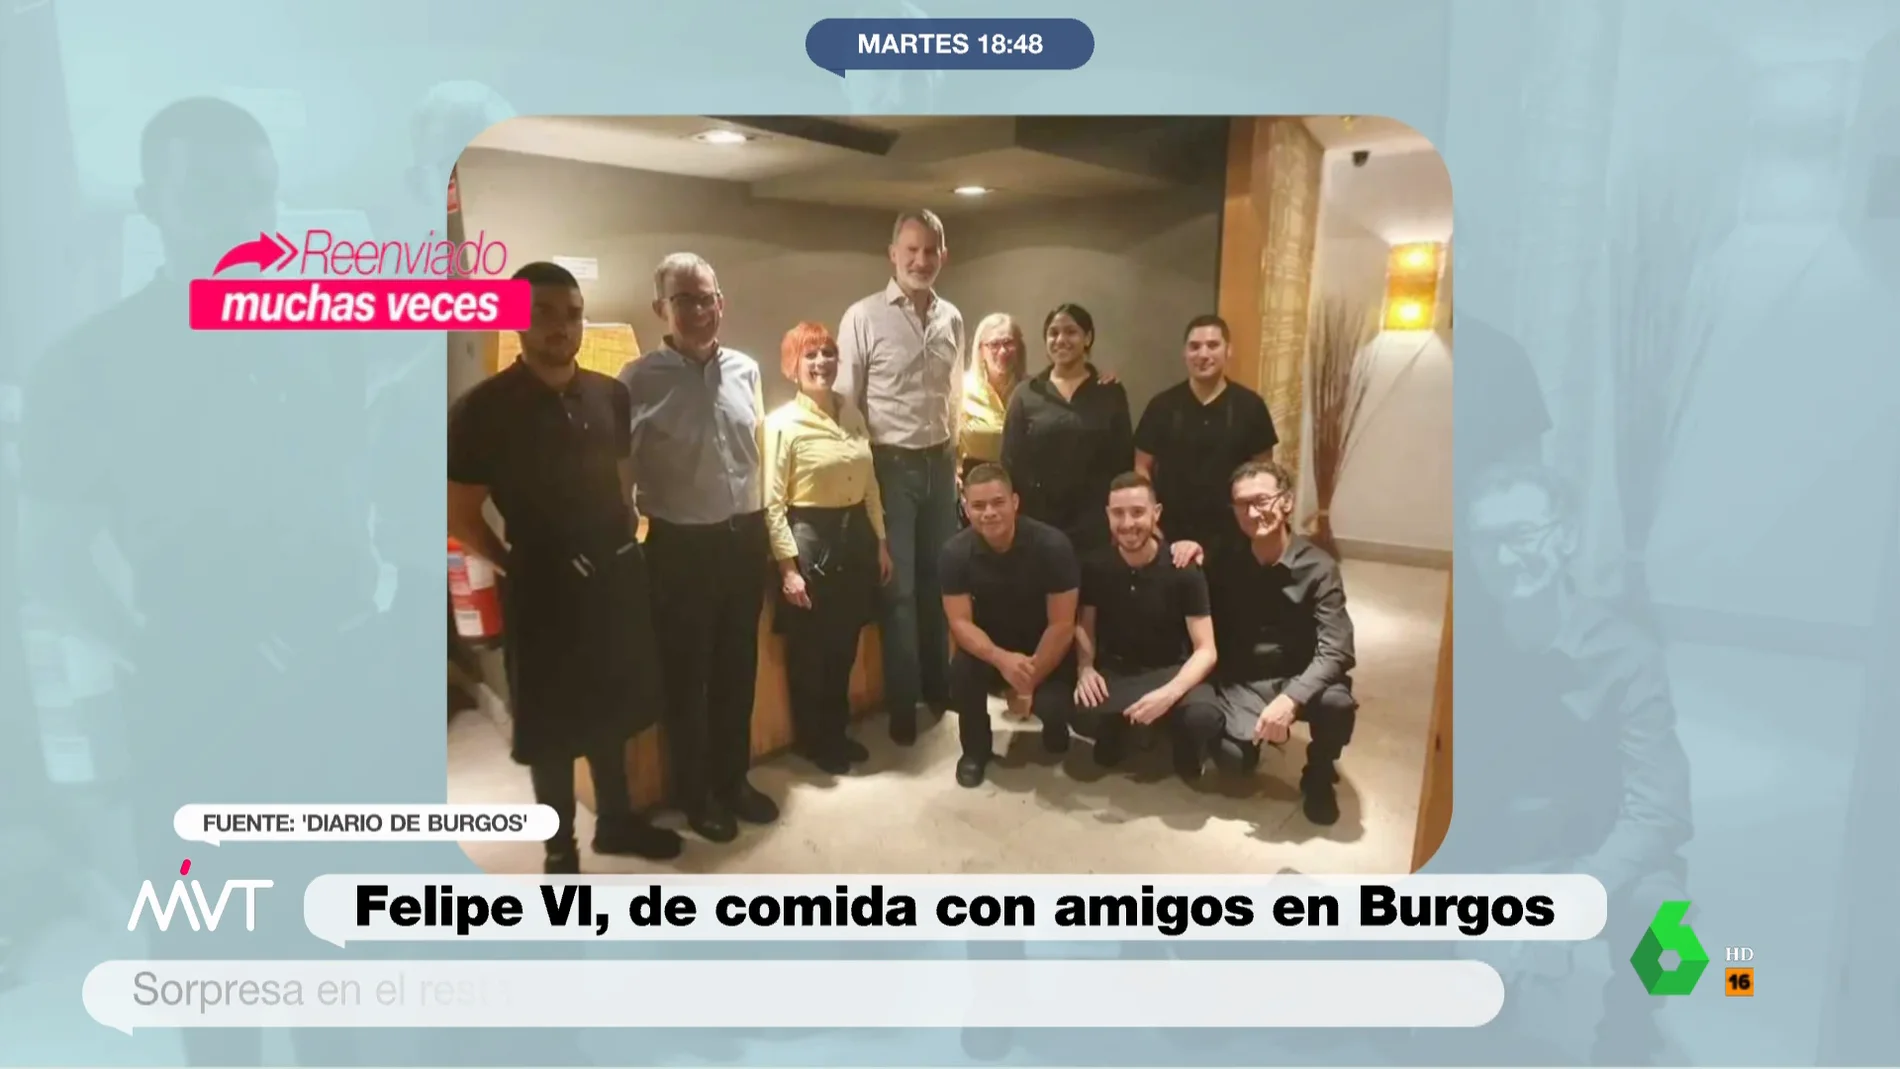 El rey Felipe VI sorprende a los empleados de un restaurante de Burgos al acudir a una comida de 55 personas